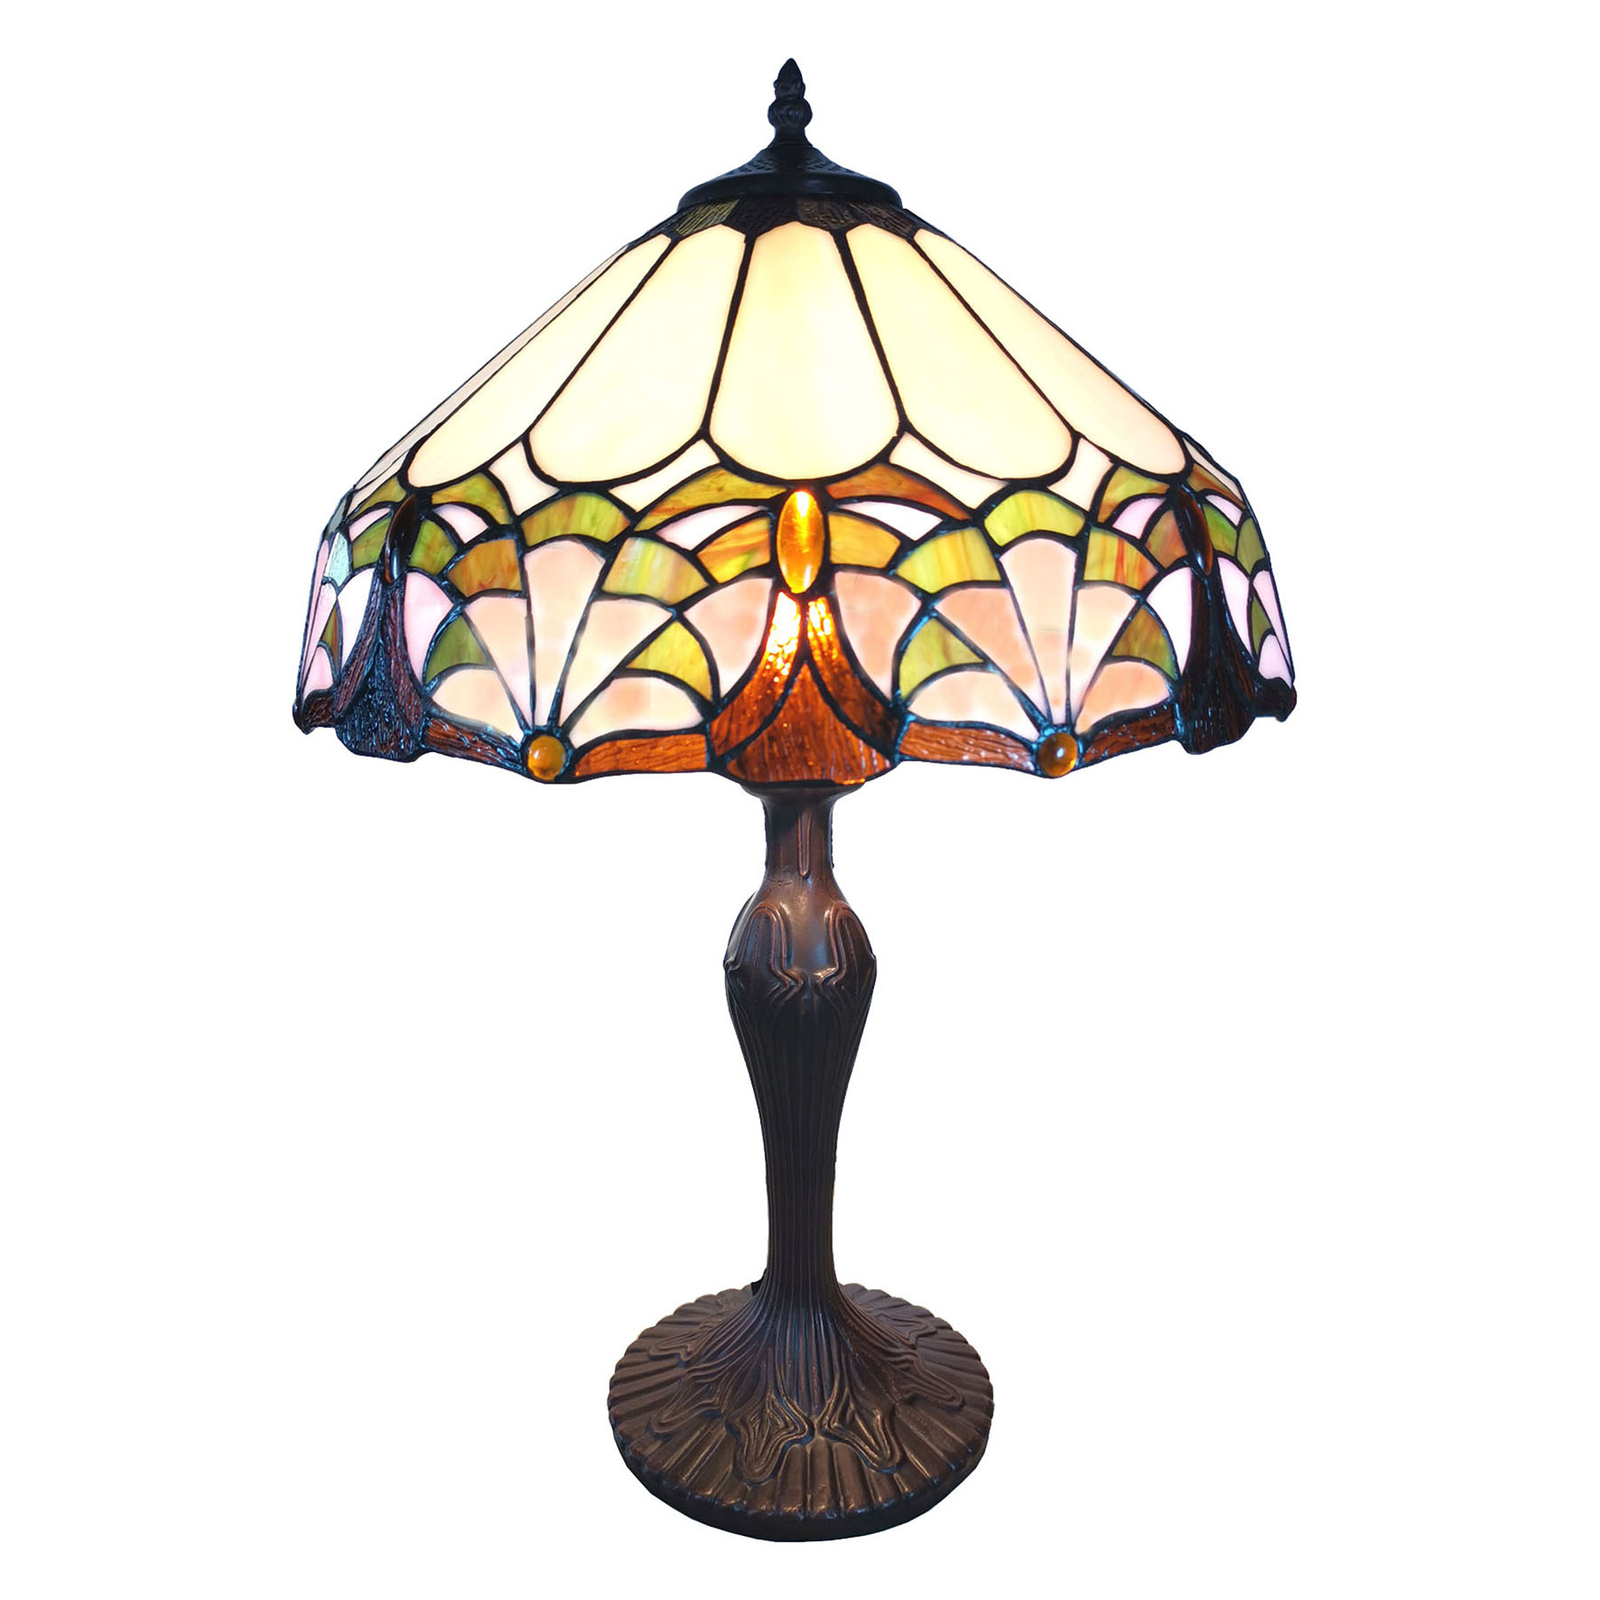 Tischleuchte 6021 vielfarbiger Tiffany-Stil-Schirm